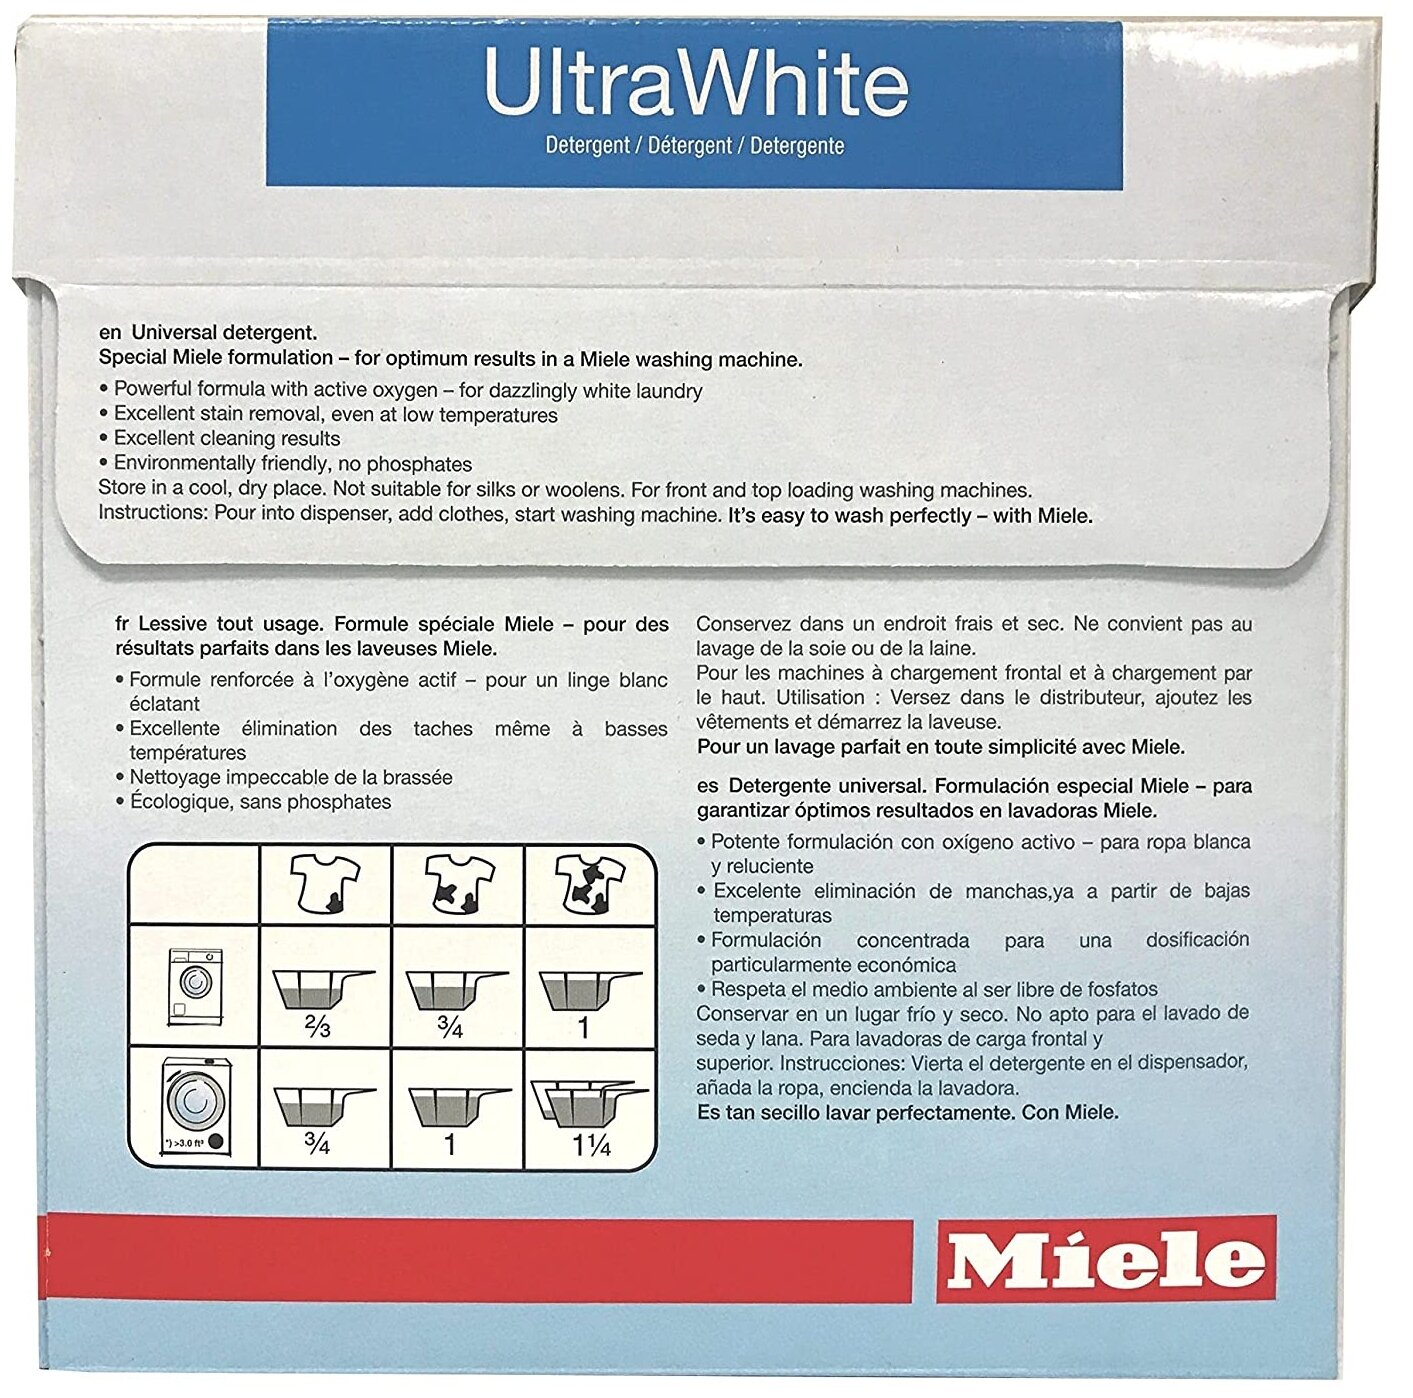 Порошок для стирки белых вещей MIELE UltraWhite 2,7кг